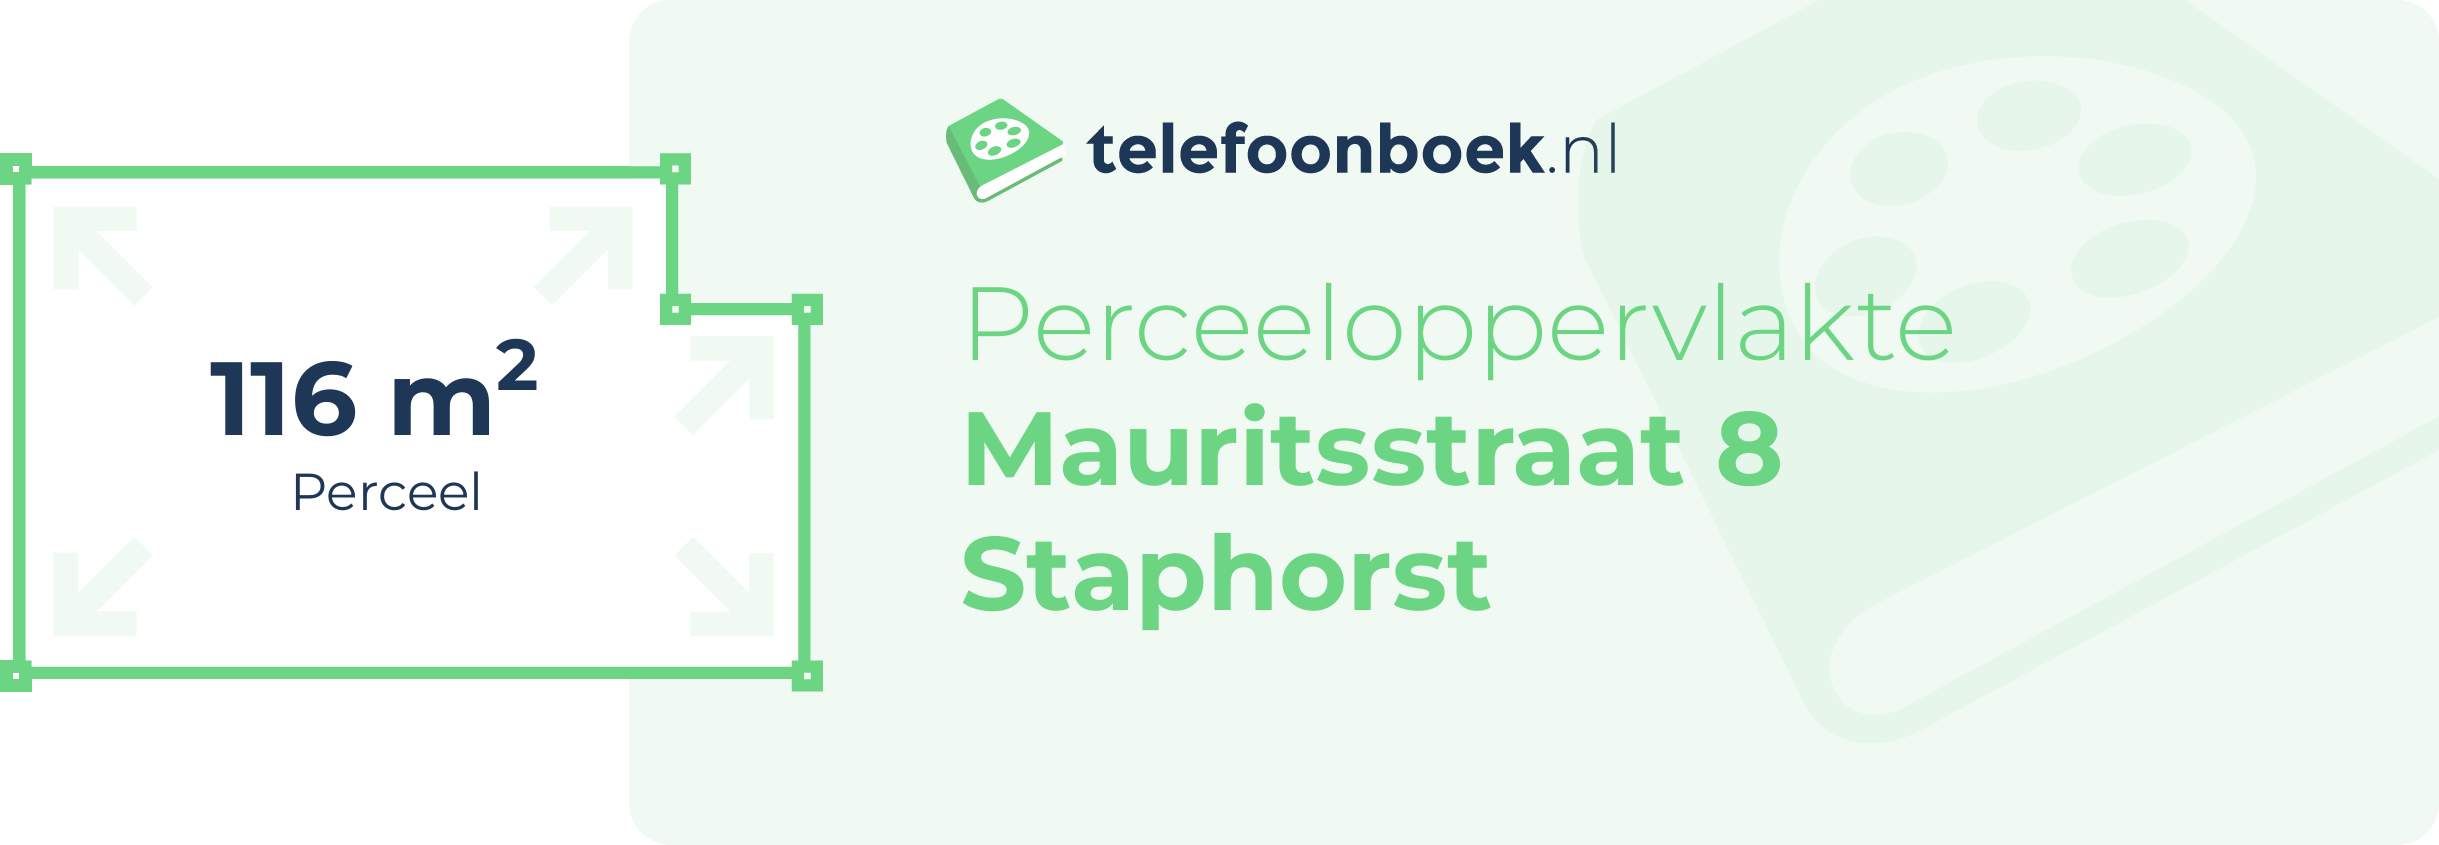 Perceeloppervlakte Mauritsstraat 8 Staphorst